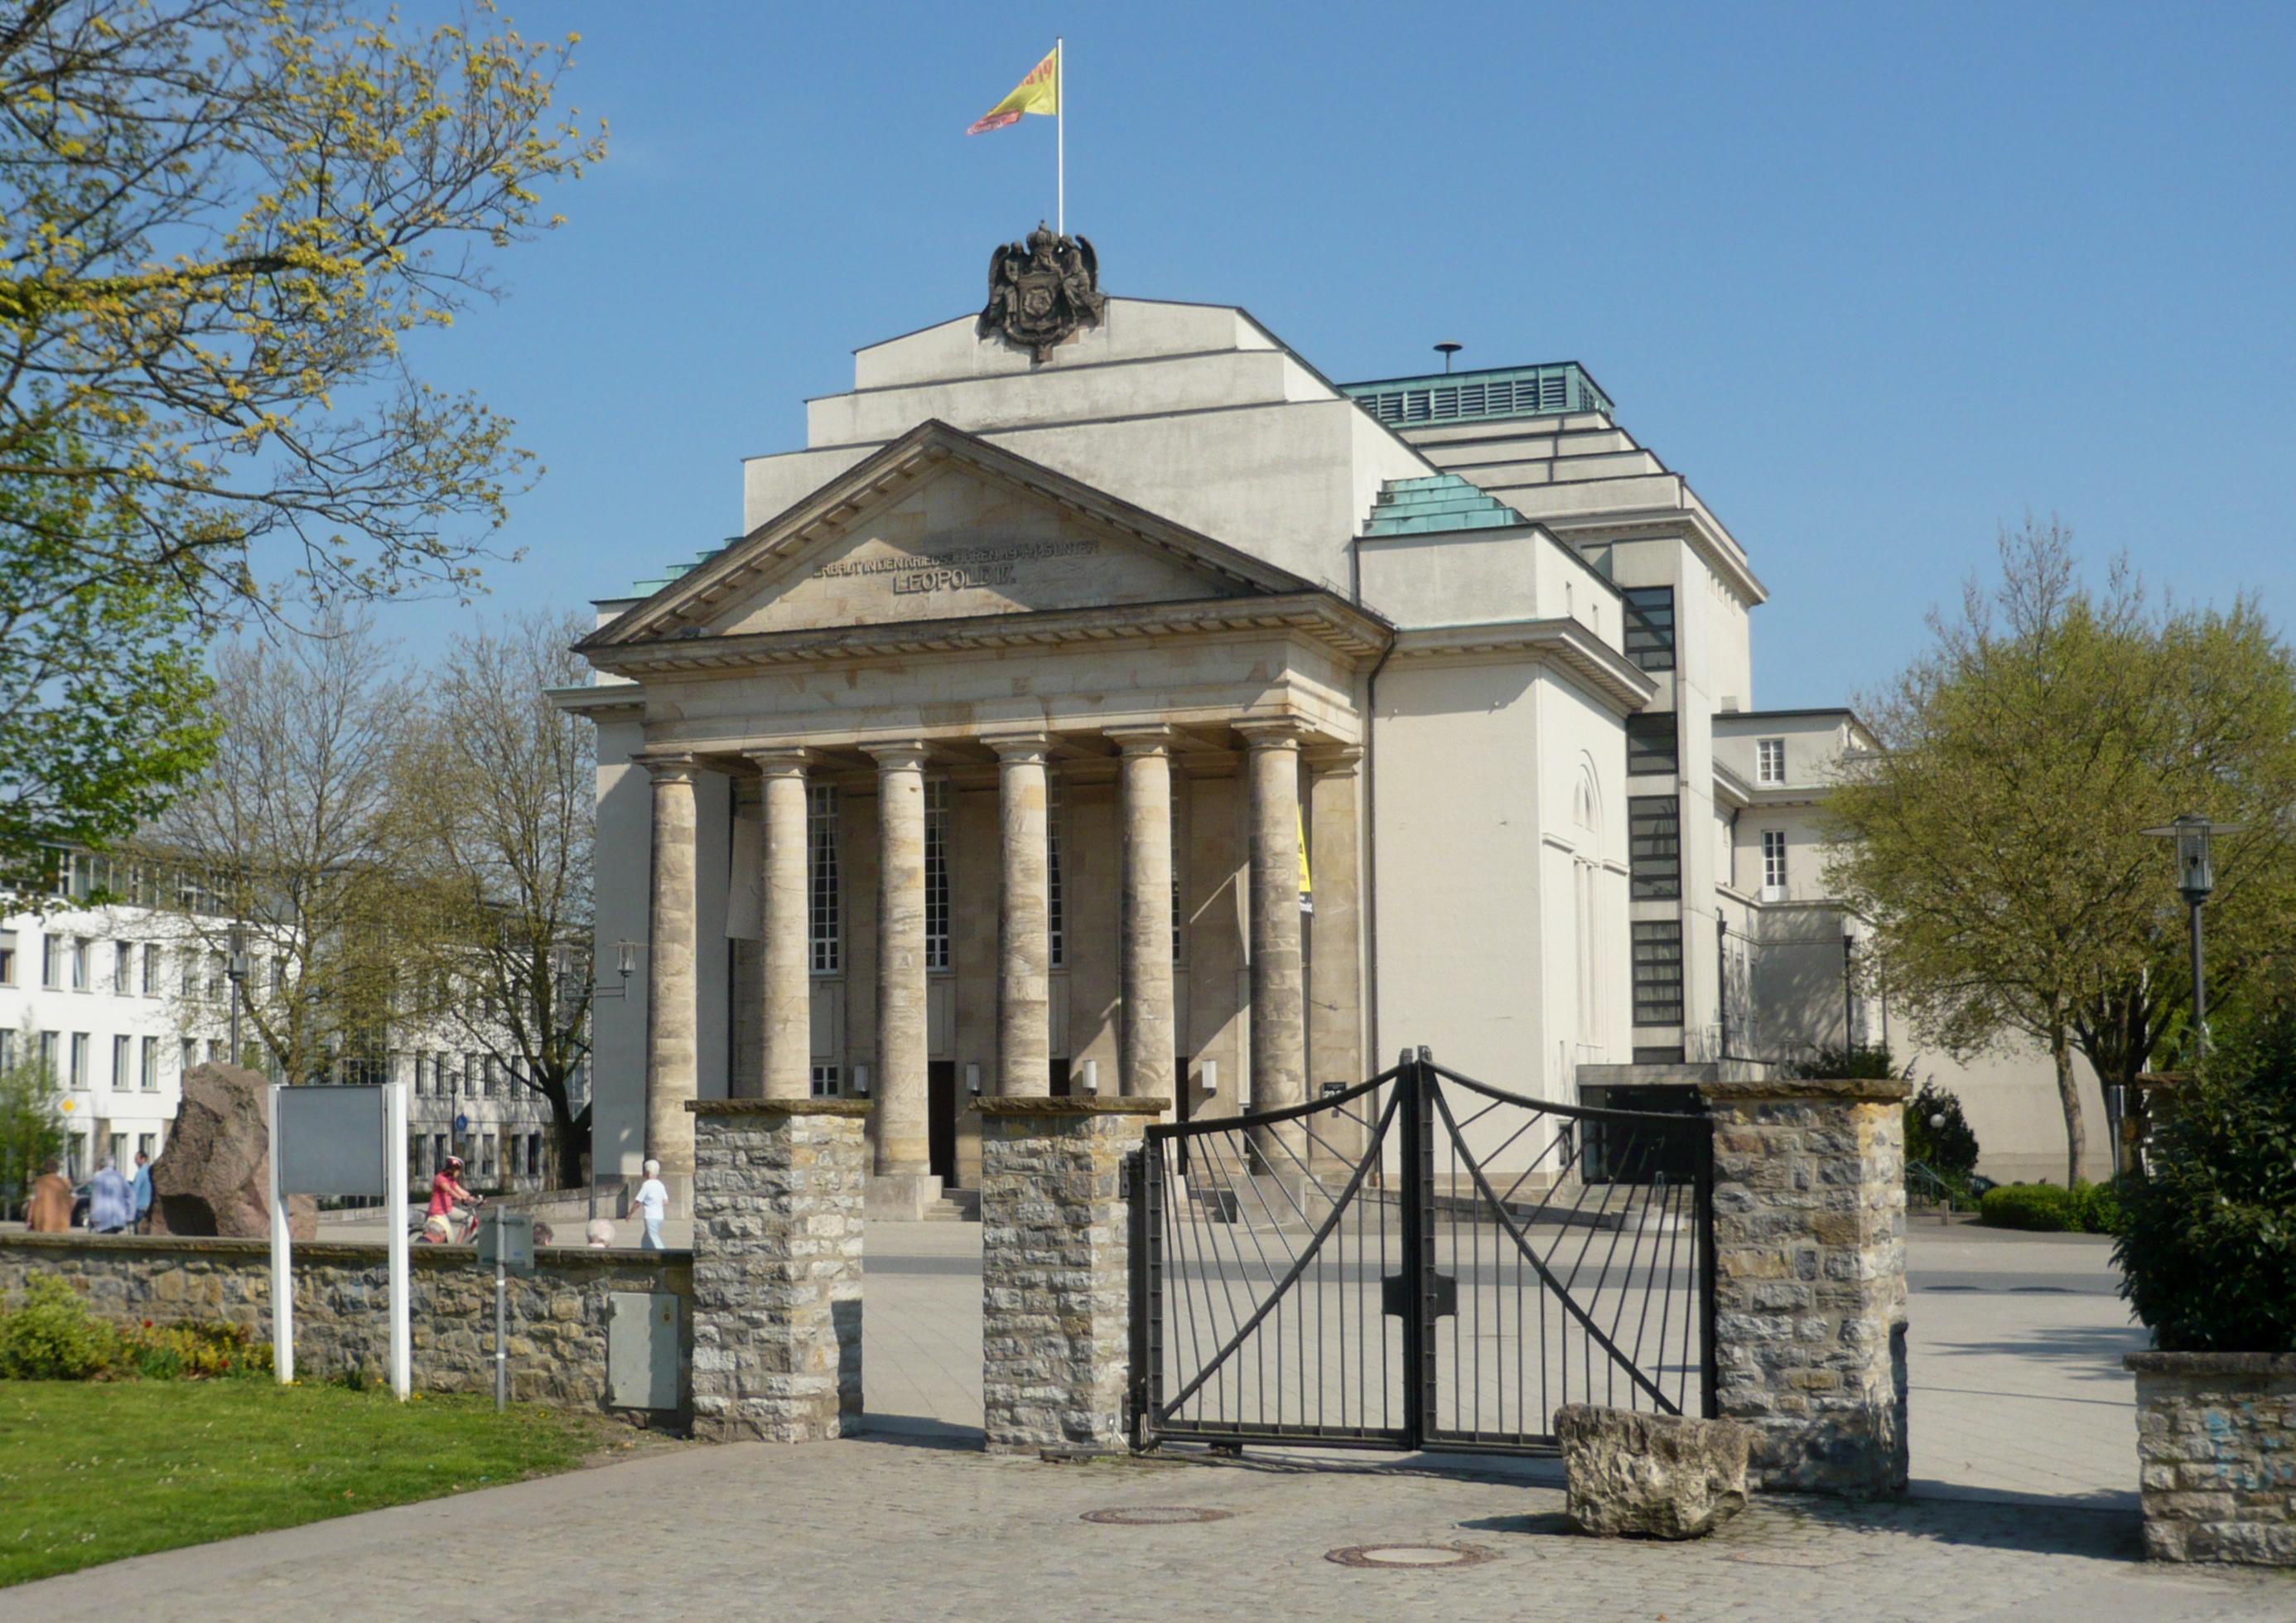 Landestheater Detmold in Detmold, Kreis Lippe, Nordrhein-Westfalen. Das Theater wurde am 8. November 1825 als Hochf